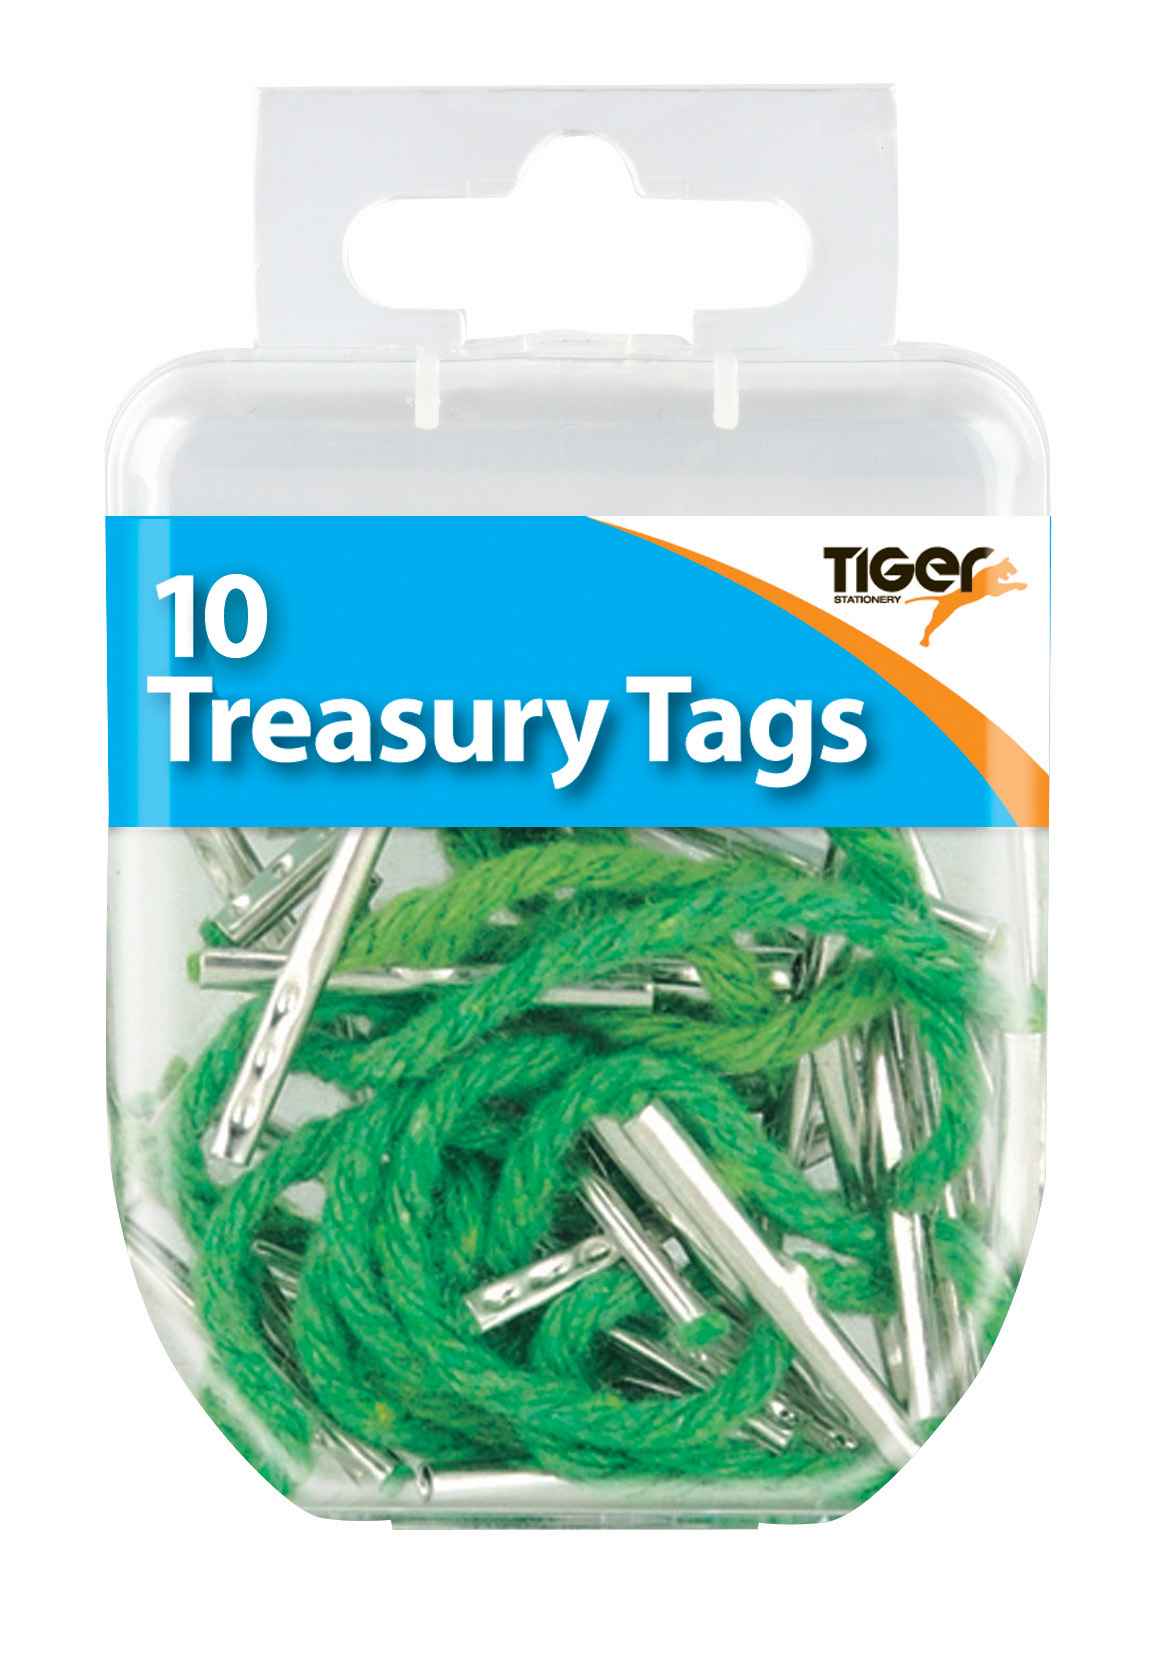 Tiger Essential 10 Treasury Tags Steel